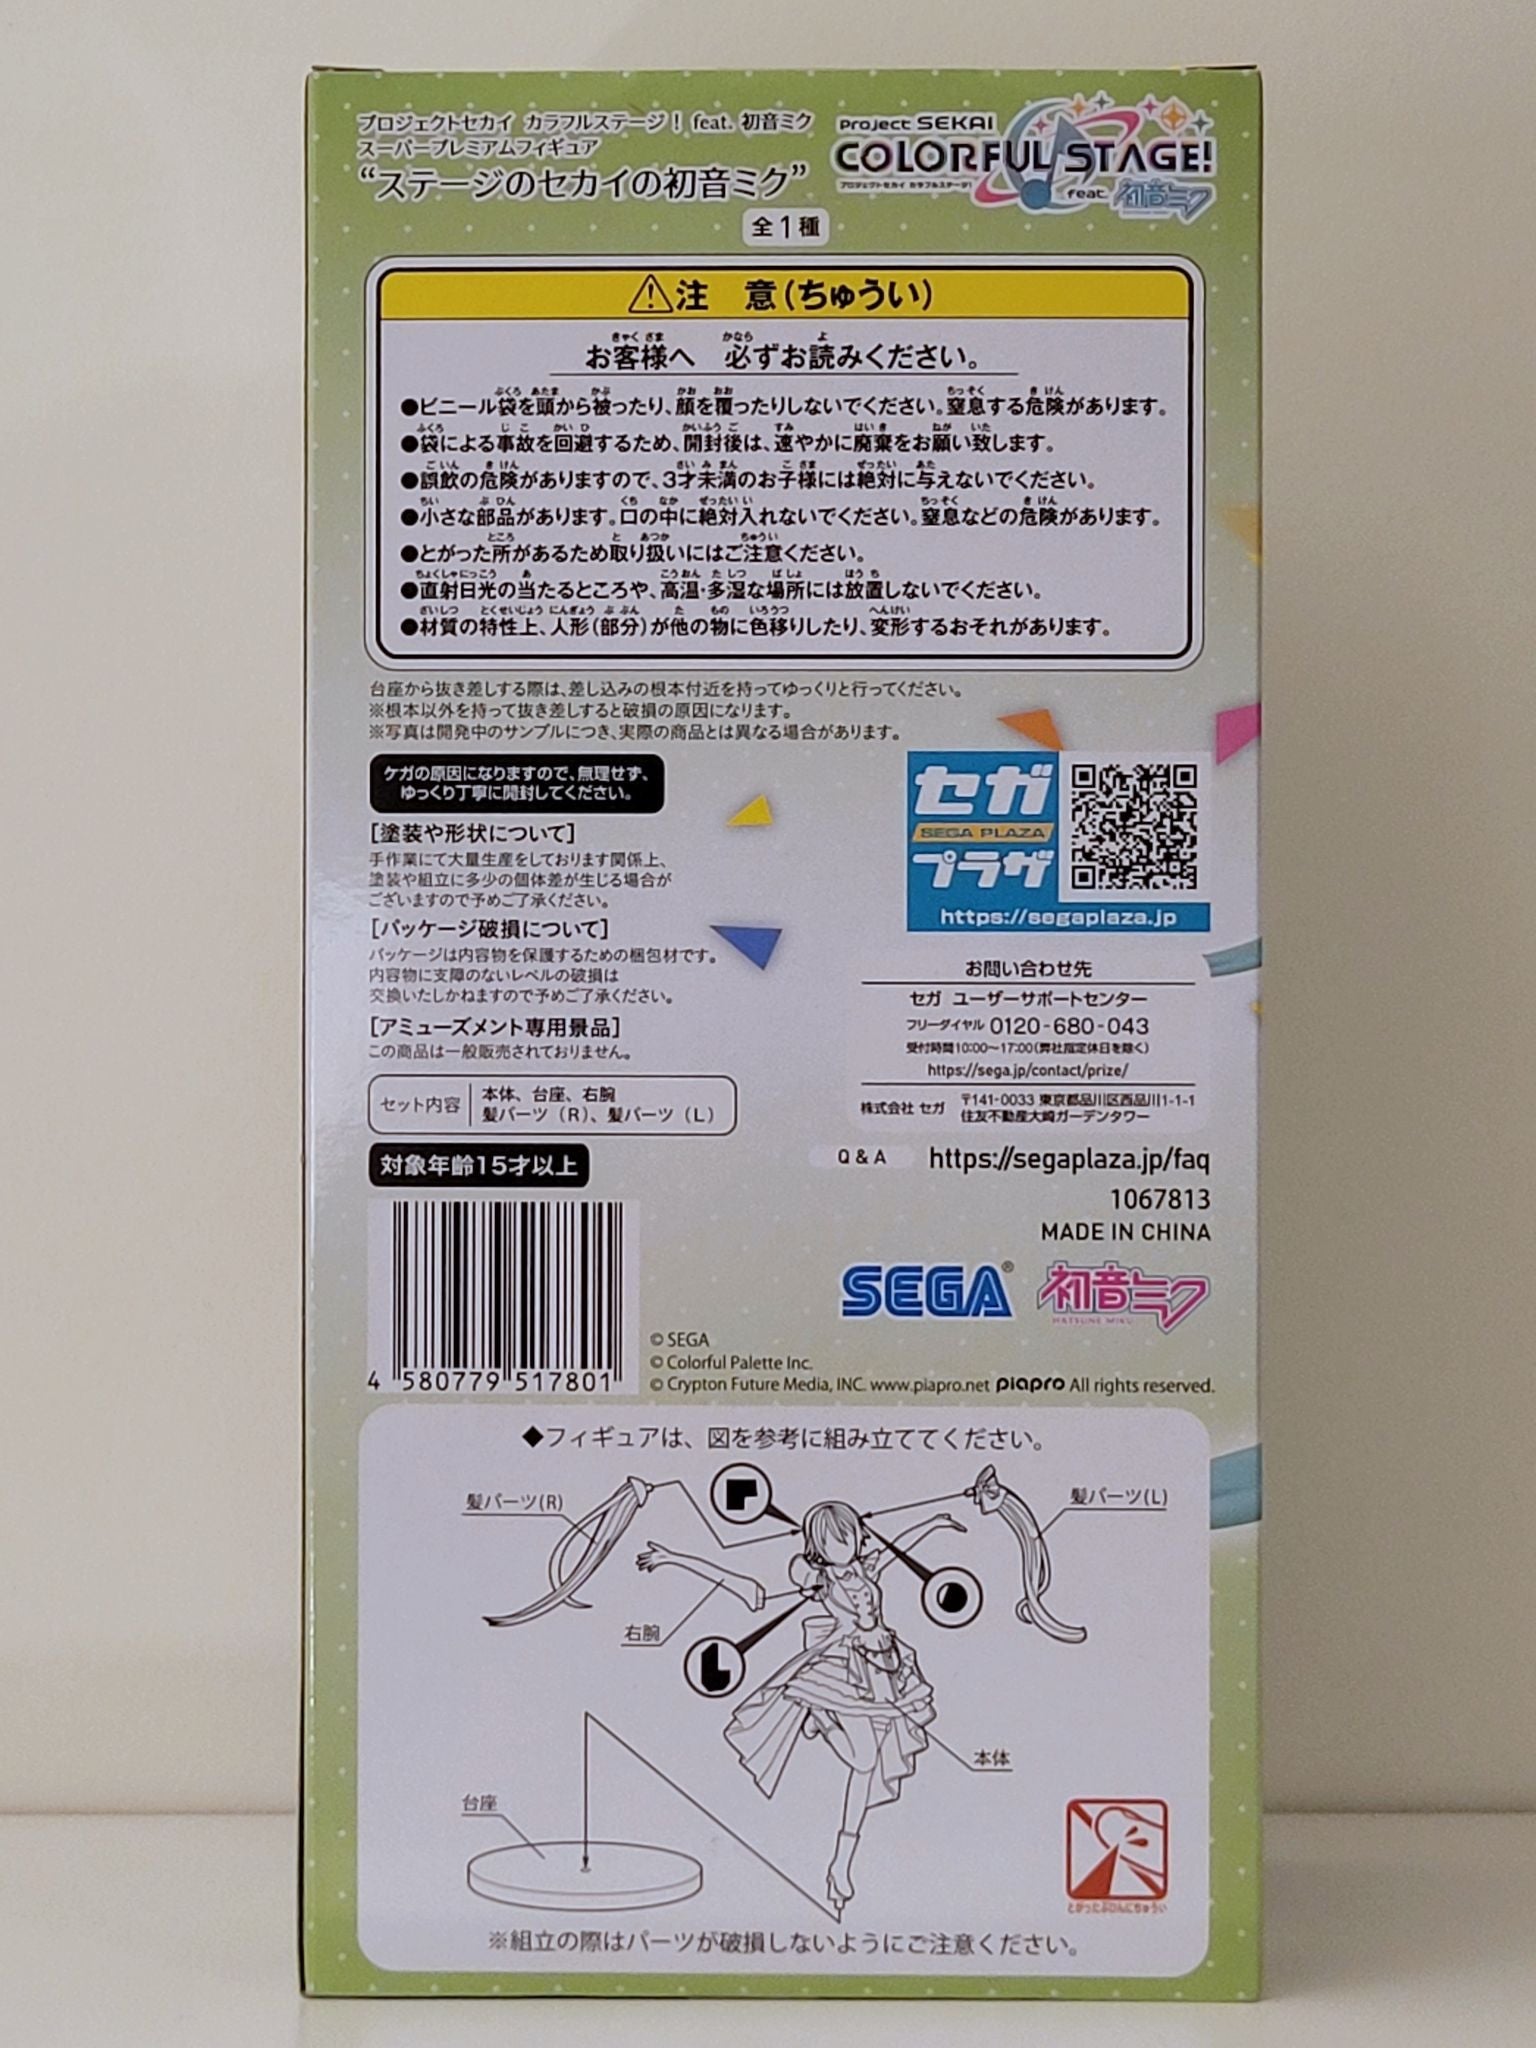 Hatsune Miku "Project Sekai Colorful Stage Ver." Super Premium figure by SEGA - 5